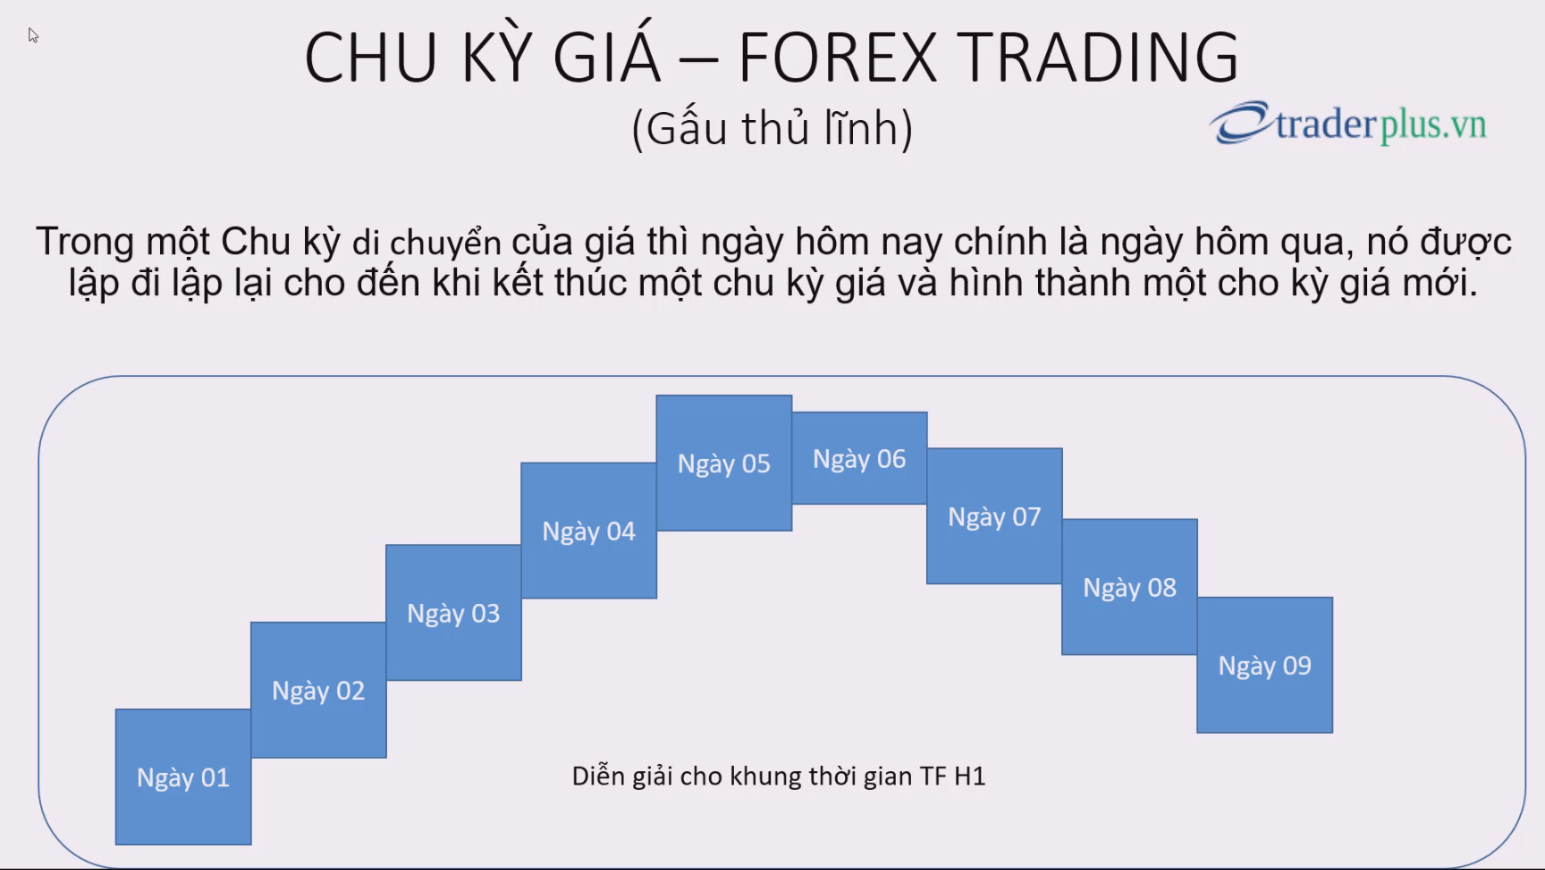 (Chia sẽ) Phương pháp giao dịch forex dựa theo Chu Kỳ Giá di chuyển